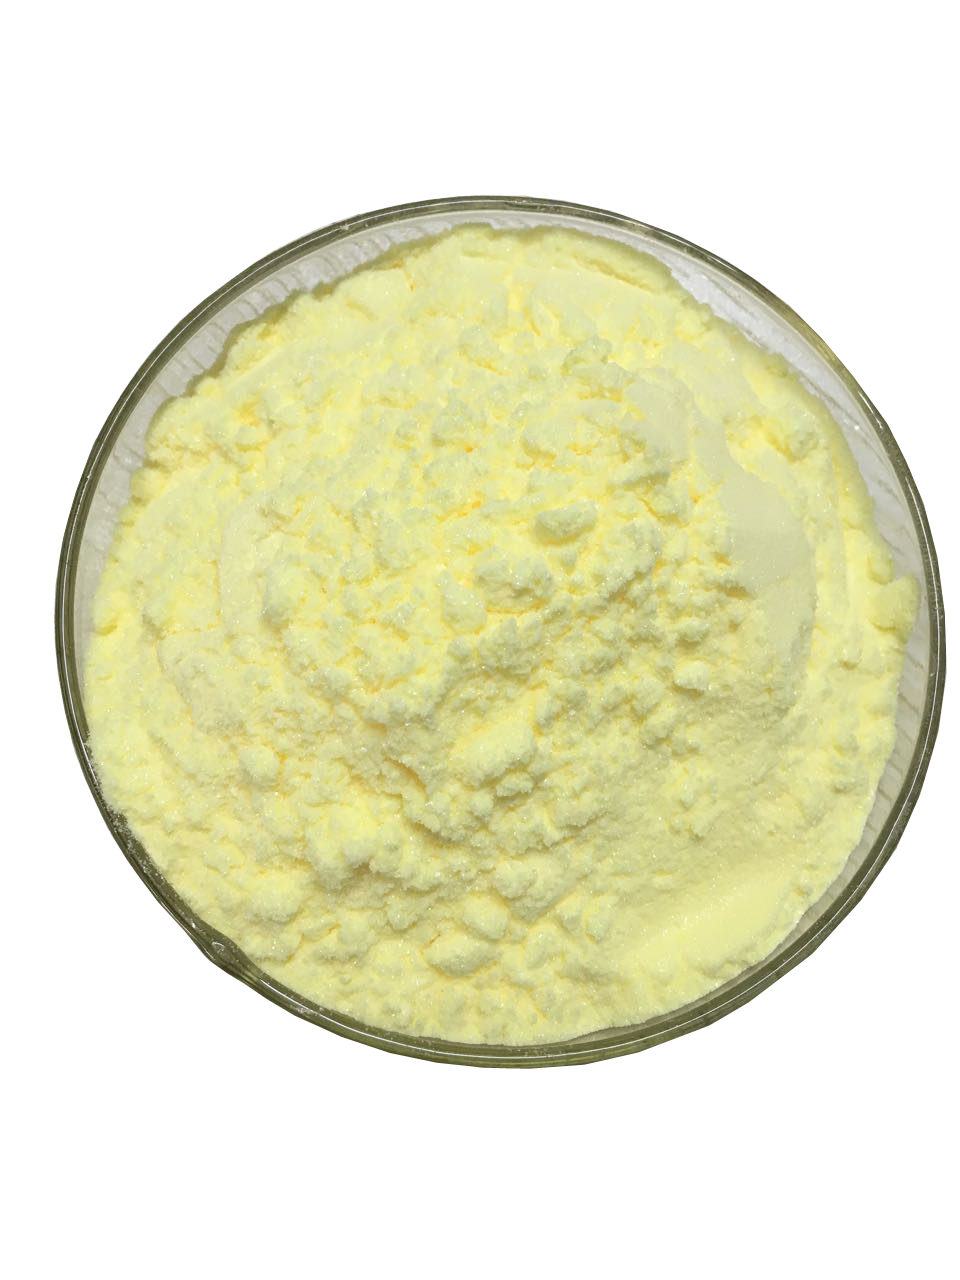 Chrysin powder